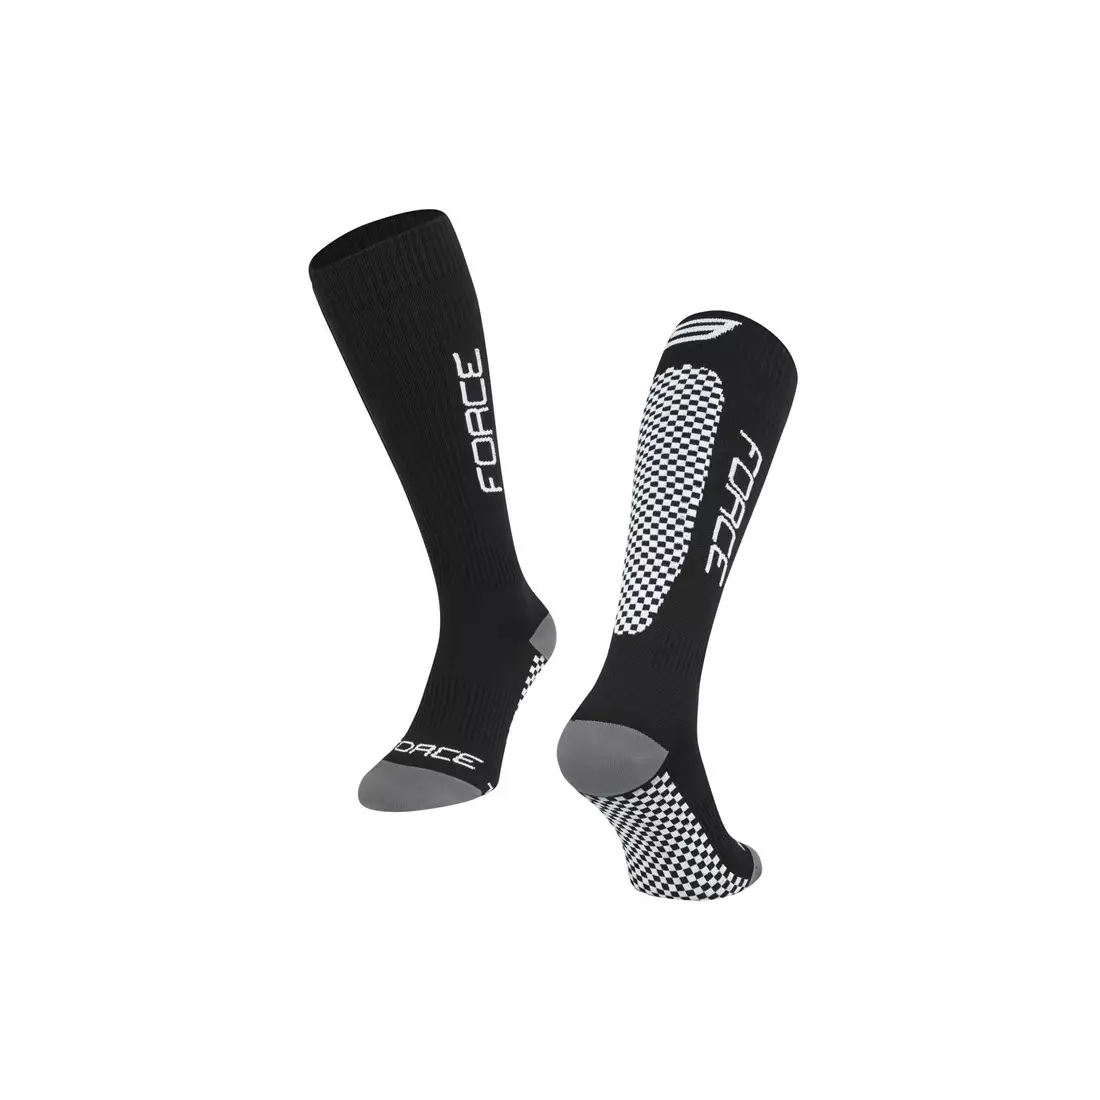 FORCE TESSERA COMPRESSION kompressziós zokni, fekete és szürke